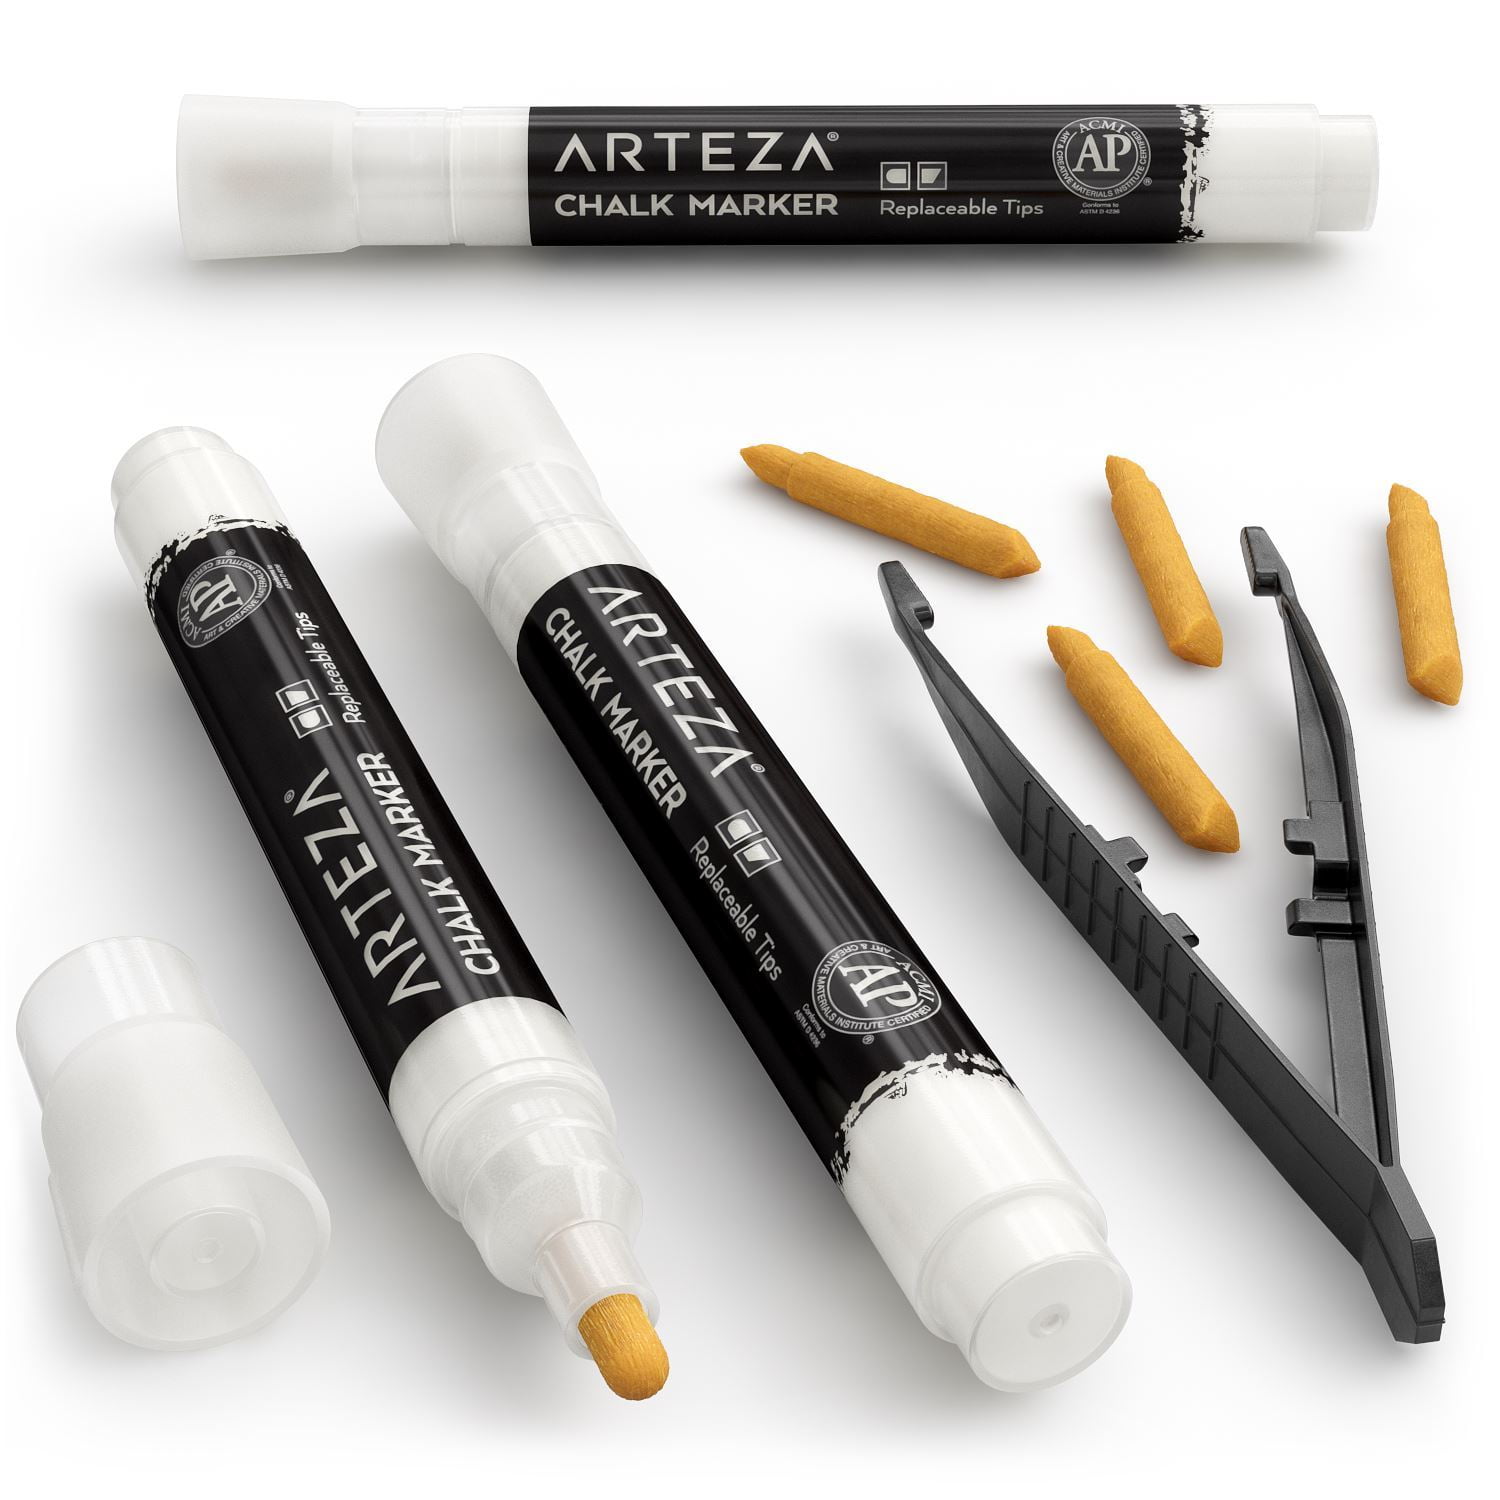 Arteza® Kids Washable Markers, Dual Tip, 24 ct